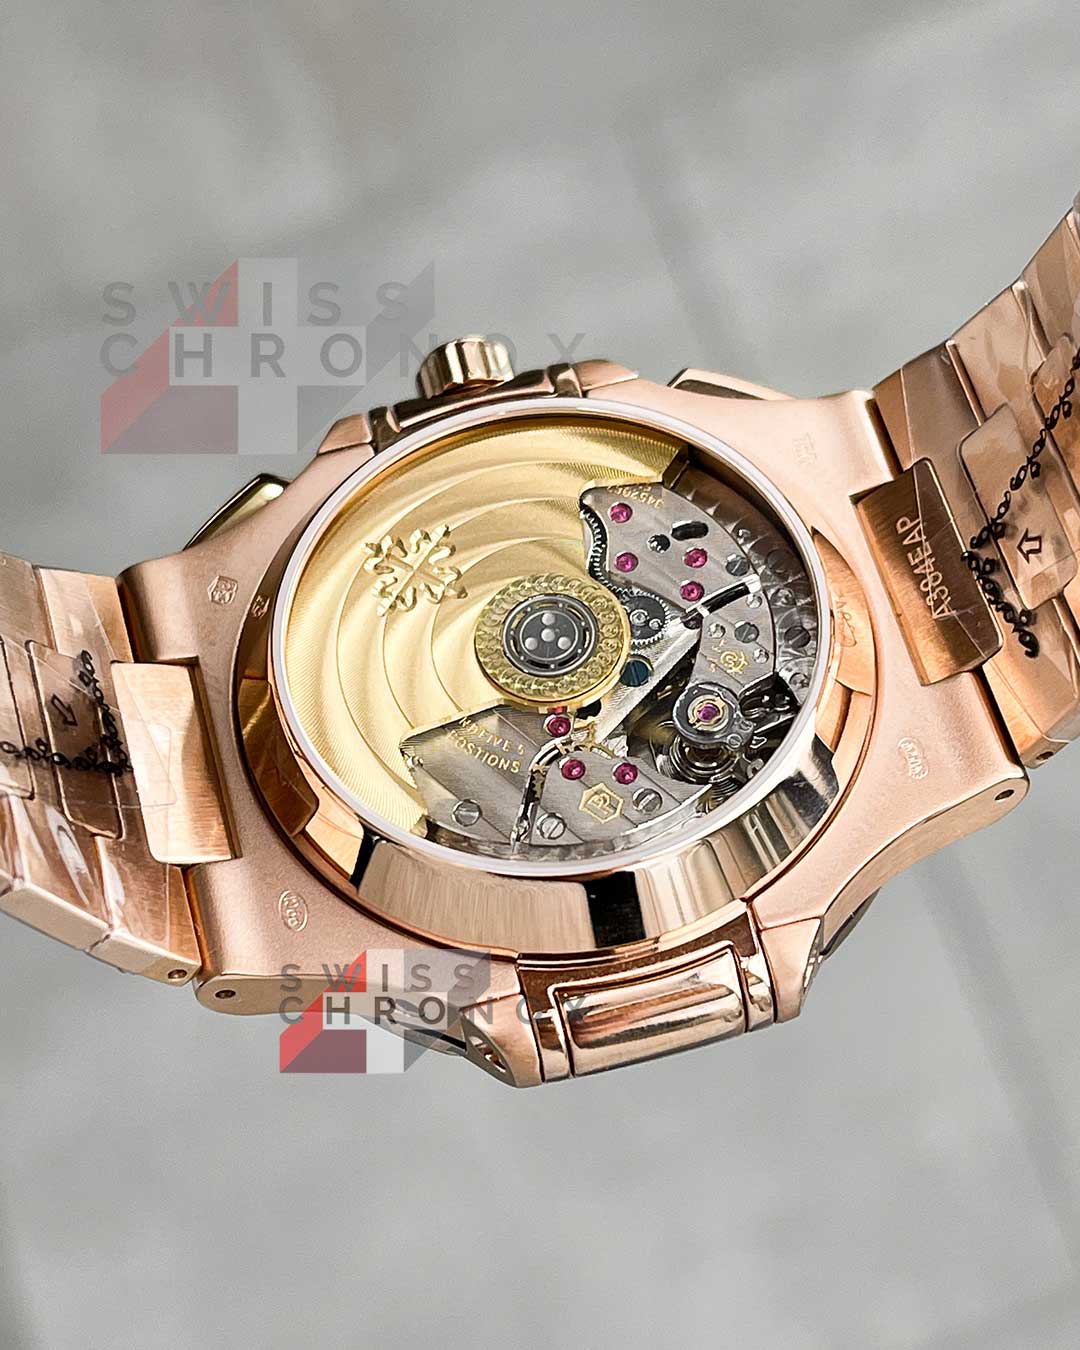 patek philippe nautilus chronograph rose gold 5980 1r 001 d